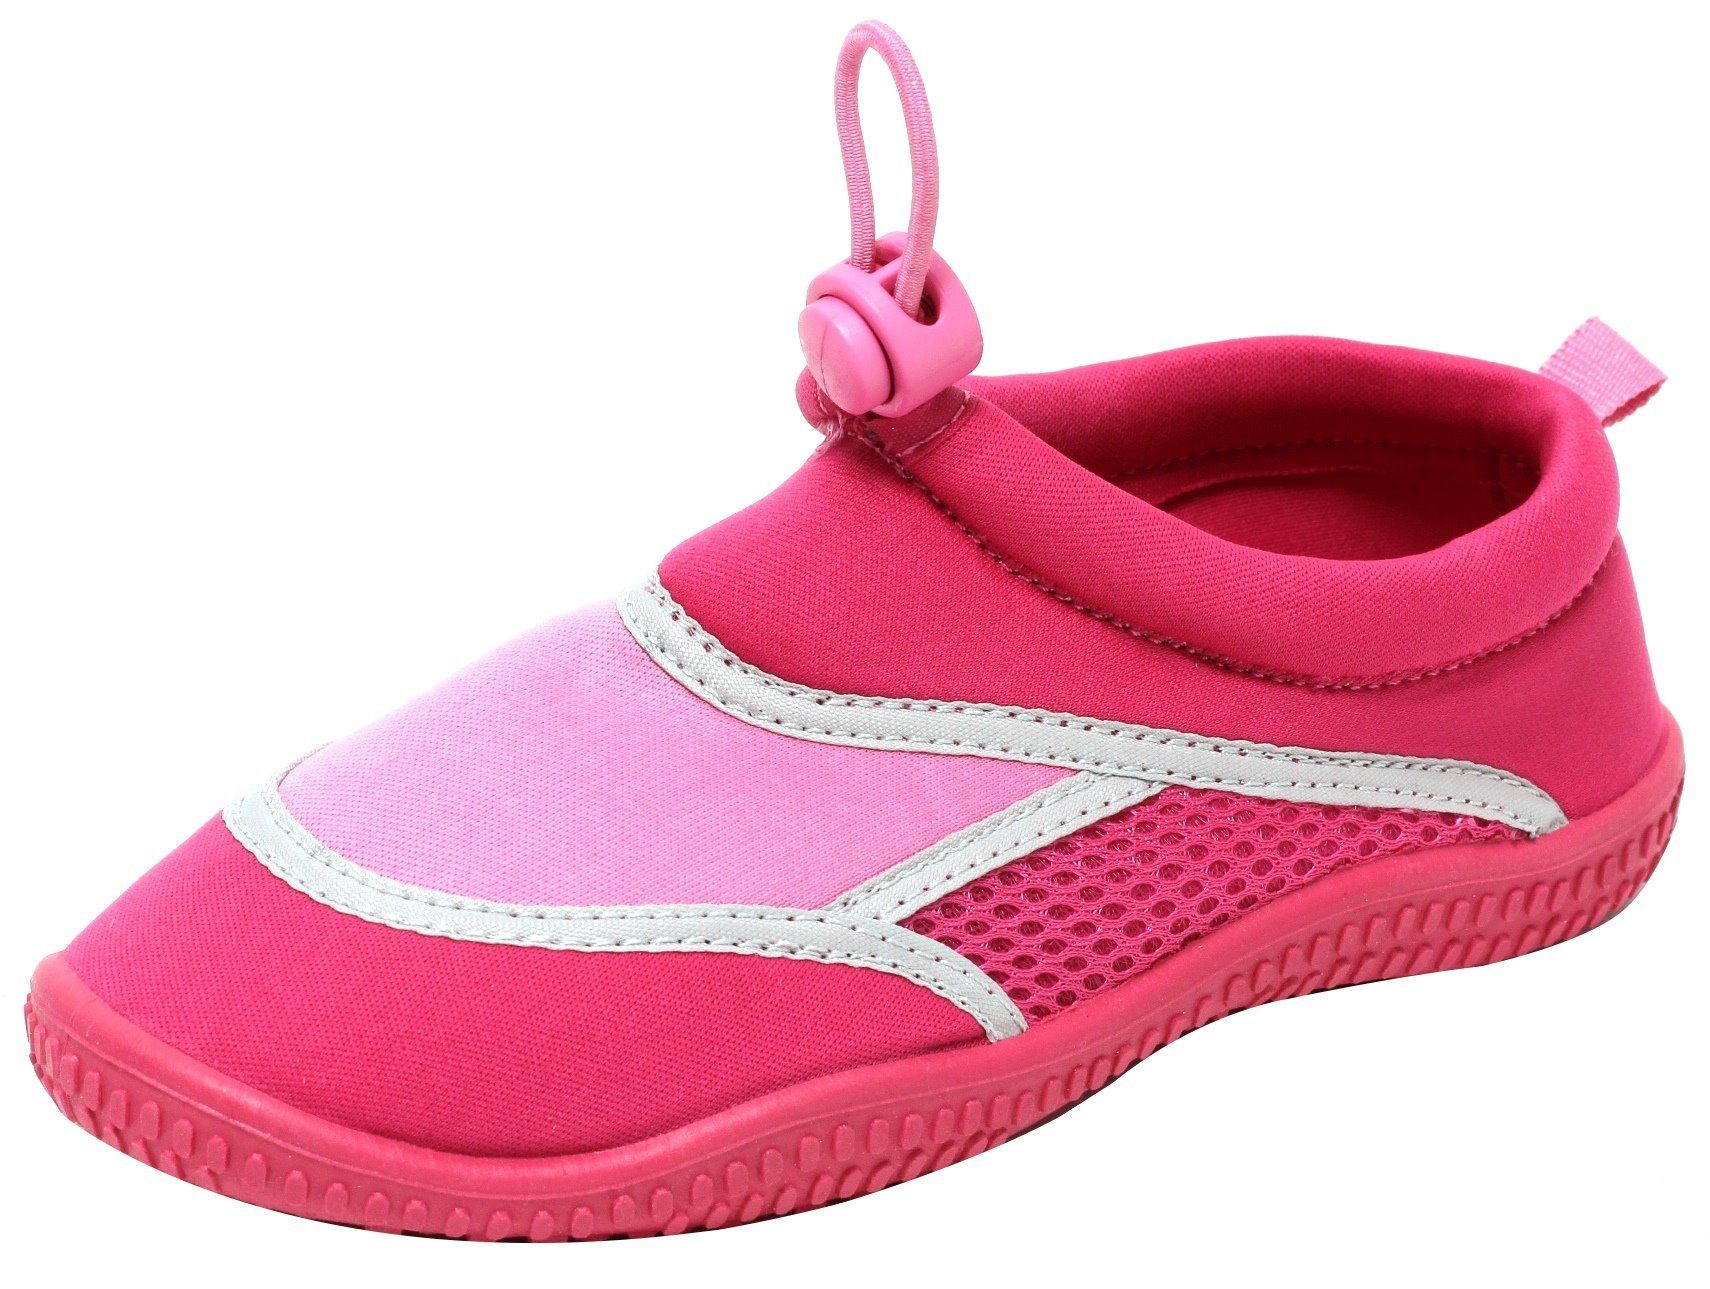 Zapato Neoprenschuh Mädchen Kinder Aquaschuhe Badeschuhe Schwimmschuhe  Strandschuhe Schuhe